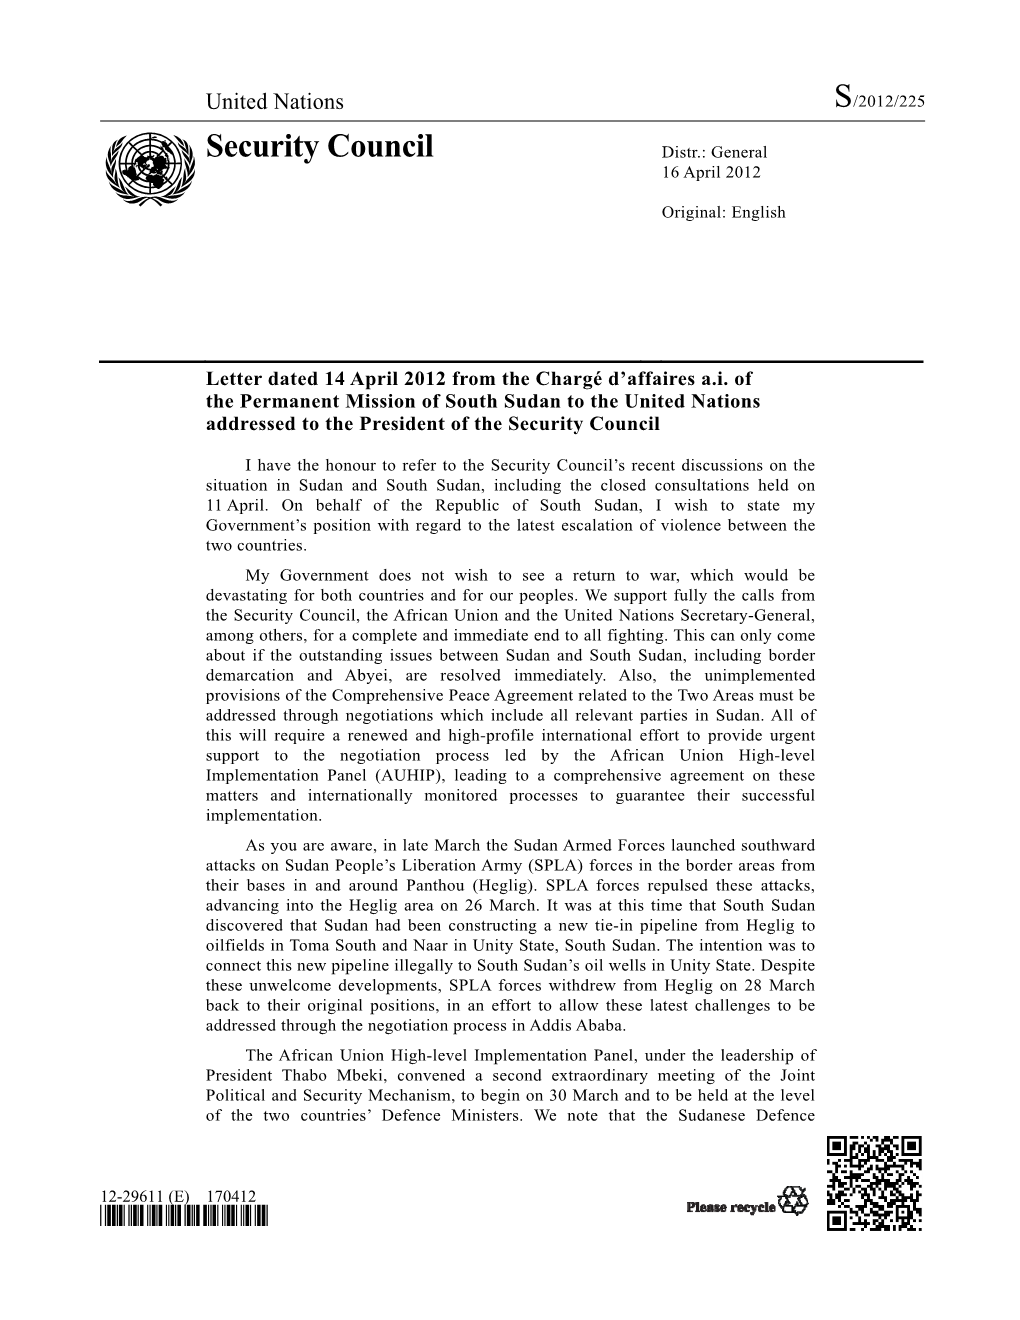 Security Council Distr.: General 16 April 2012